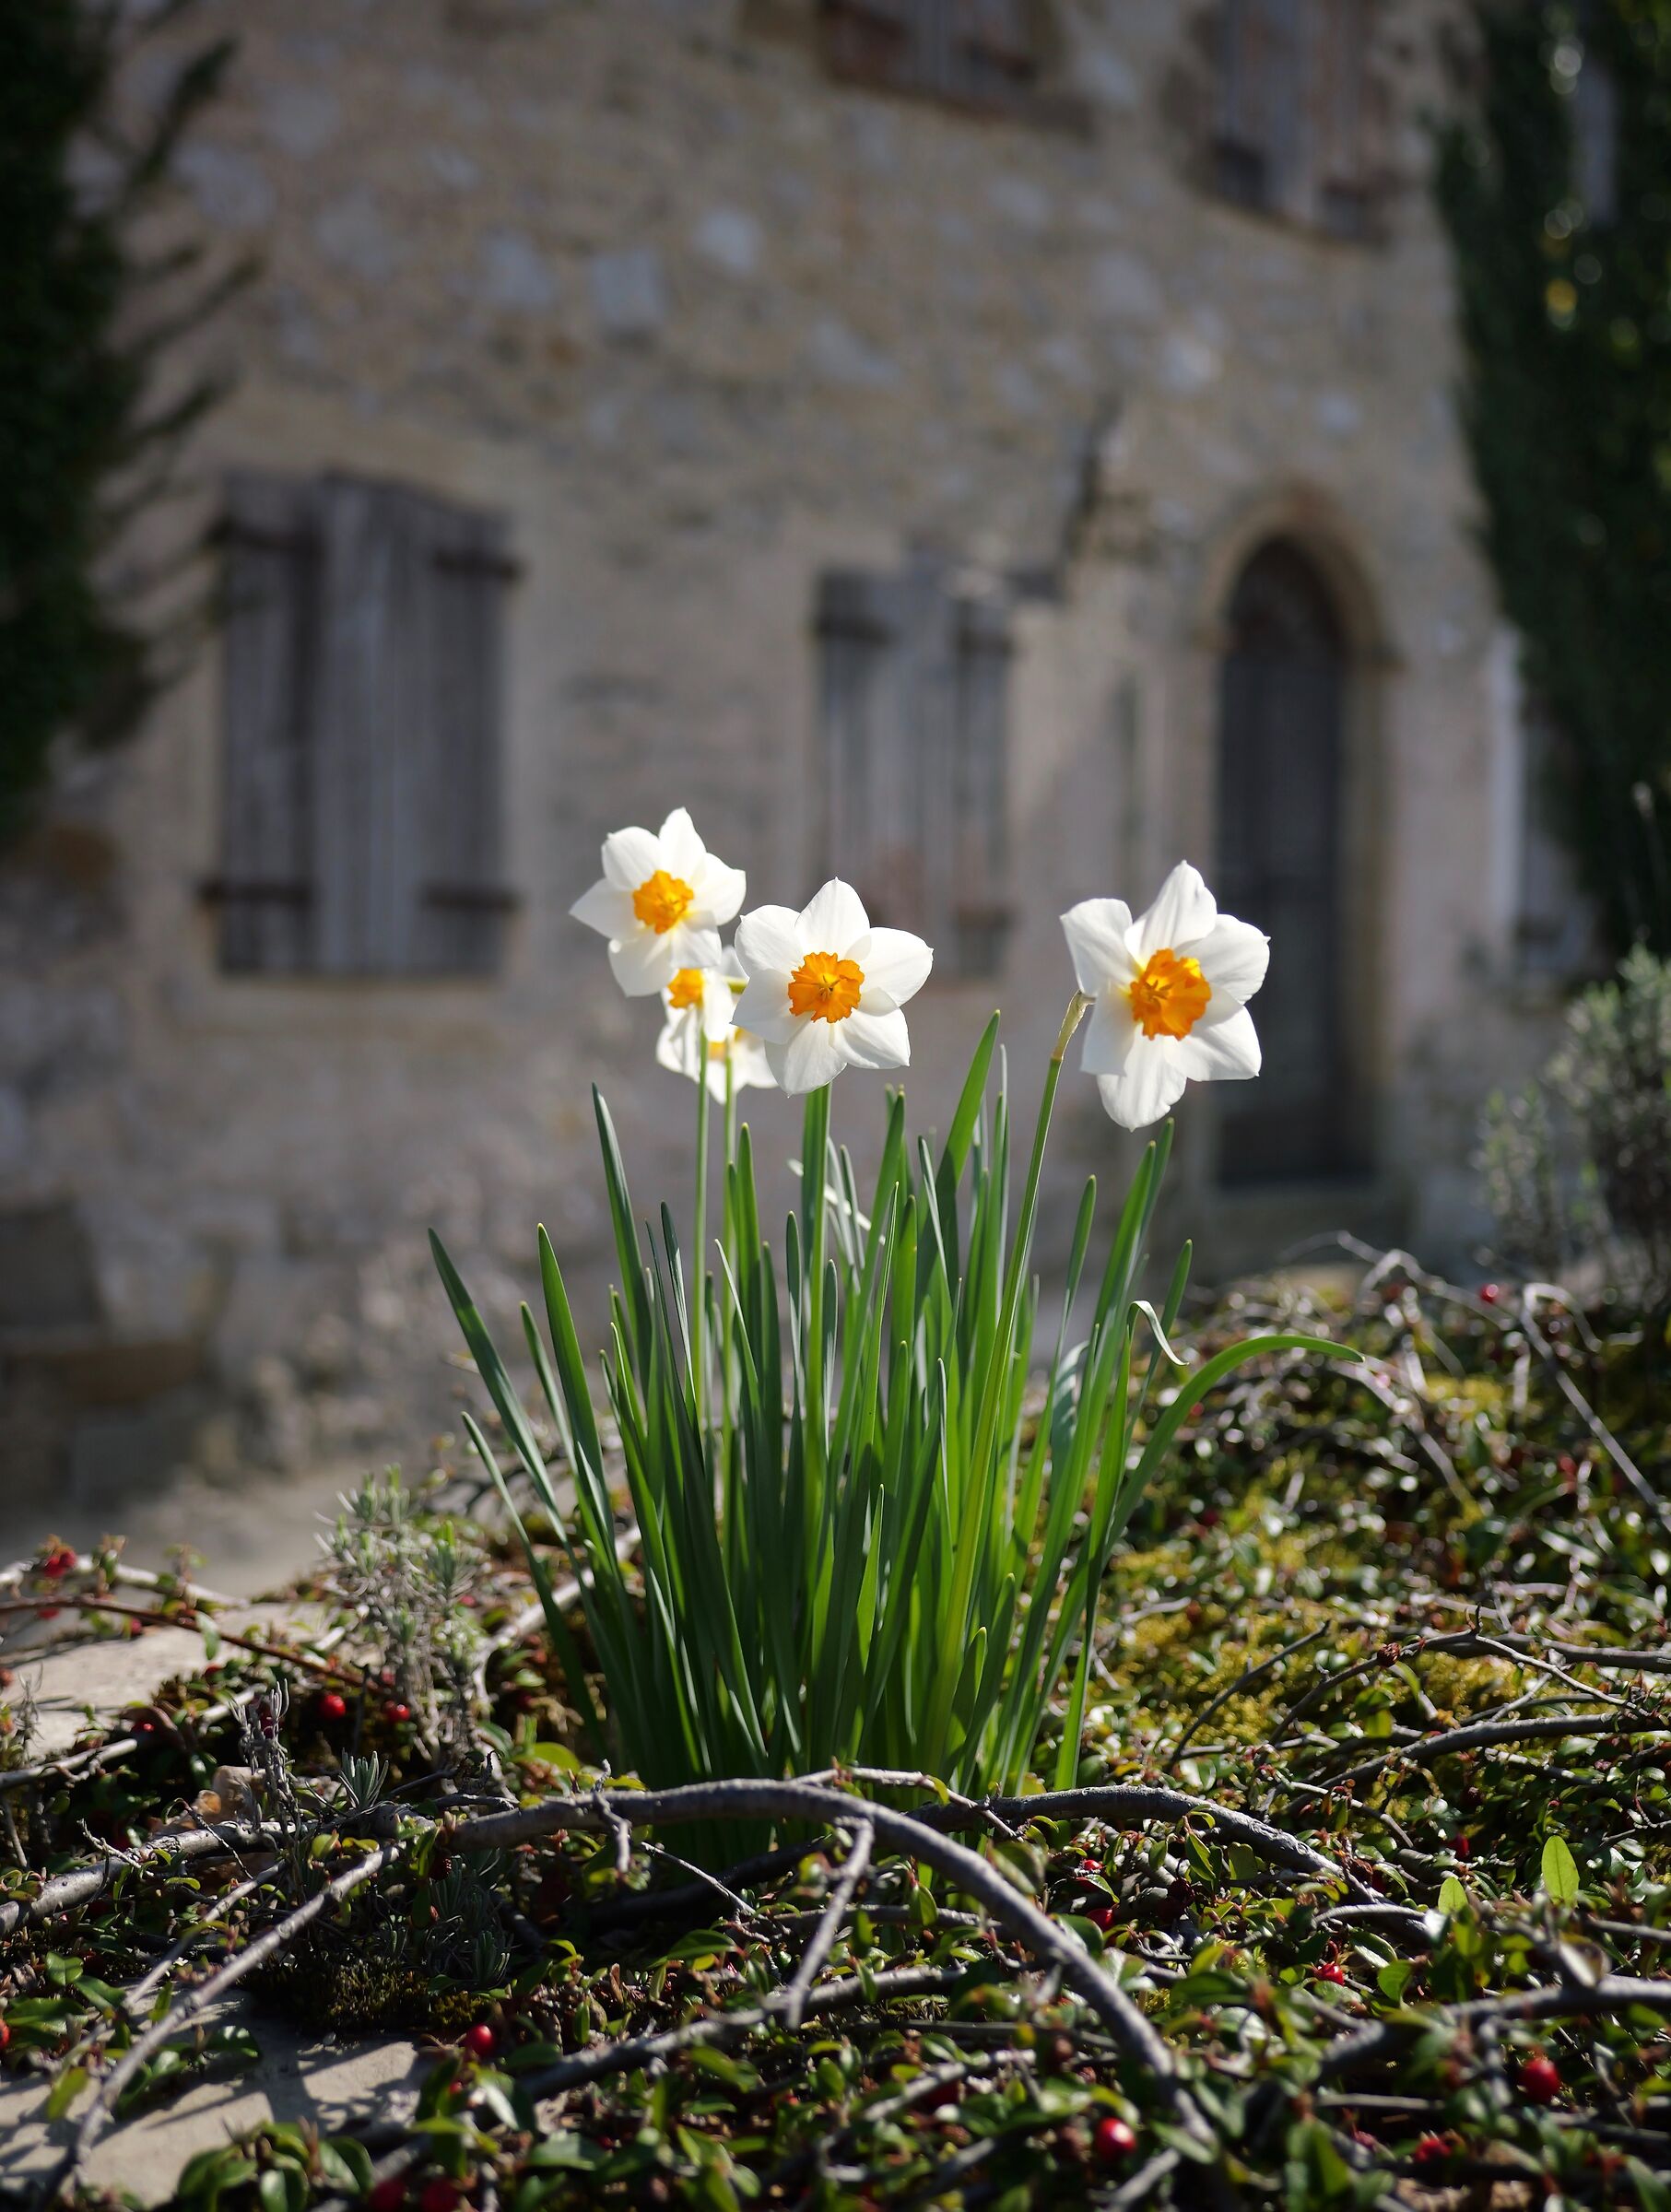 Daffodils in Pofabbro...